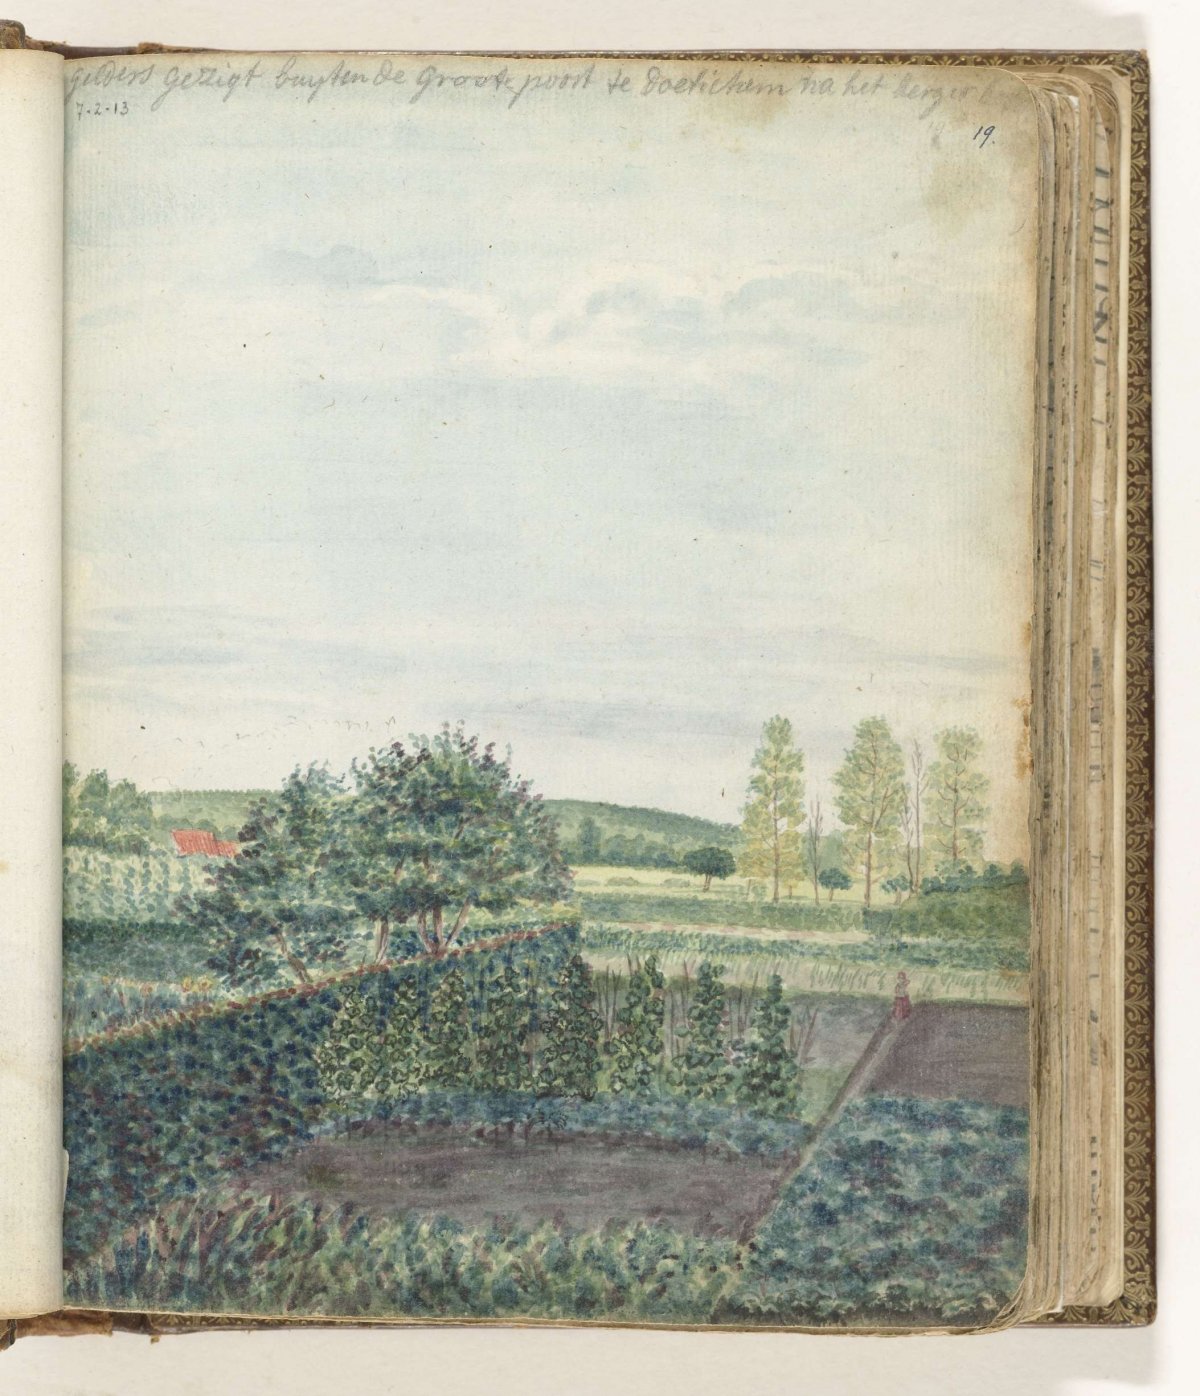 Gelderland face at Doetinchem, Jan Brandes, 1770 - 1778